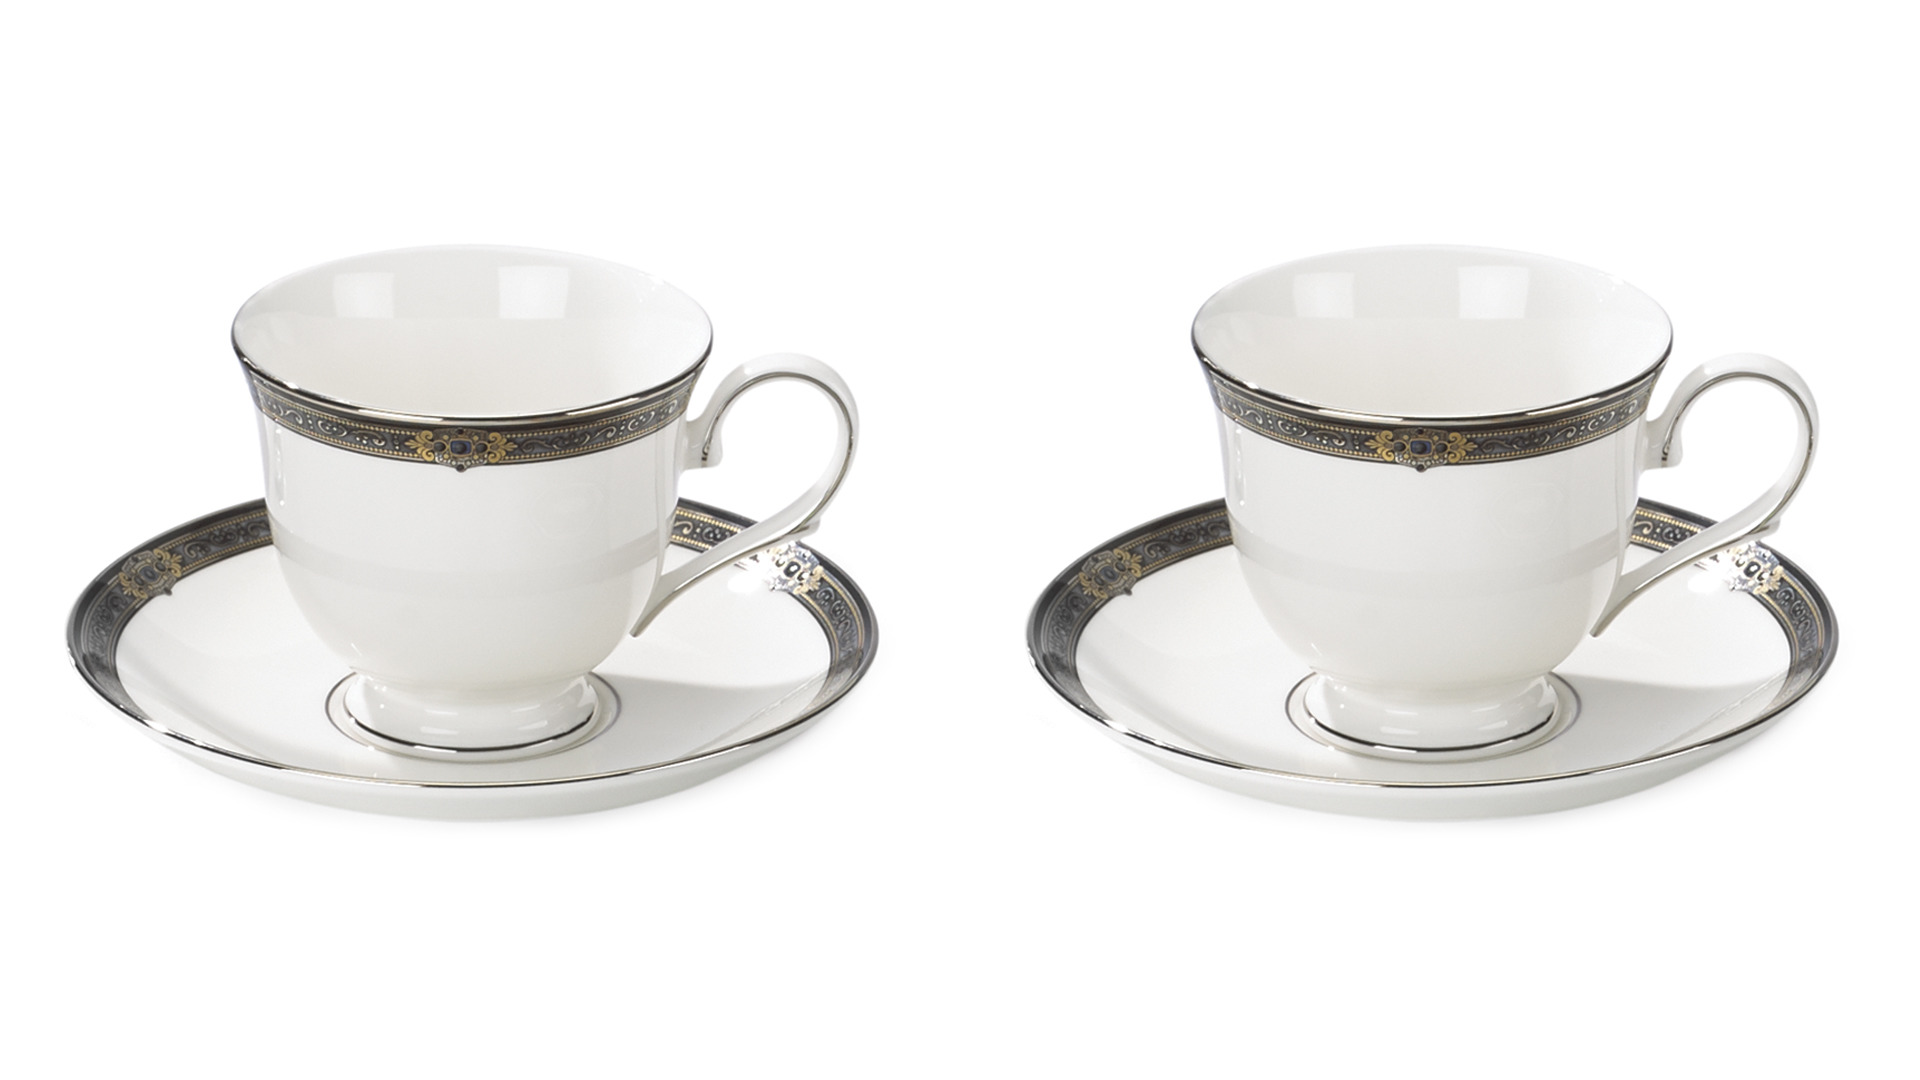 Набор из 2 чашек чайно-кофейных с блюдцами Lenox  Классические ценности 180 мл, 2 шт